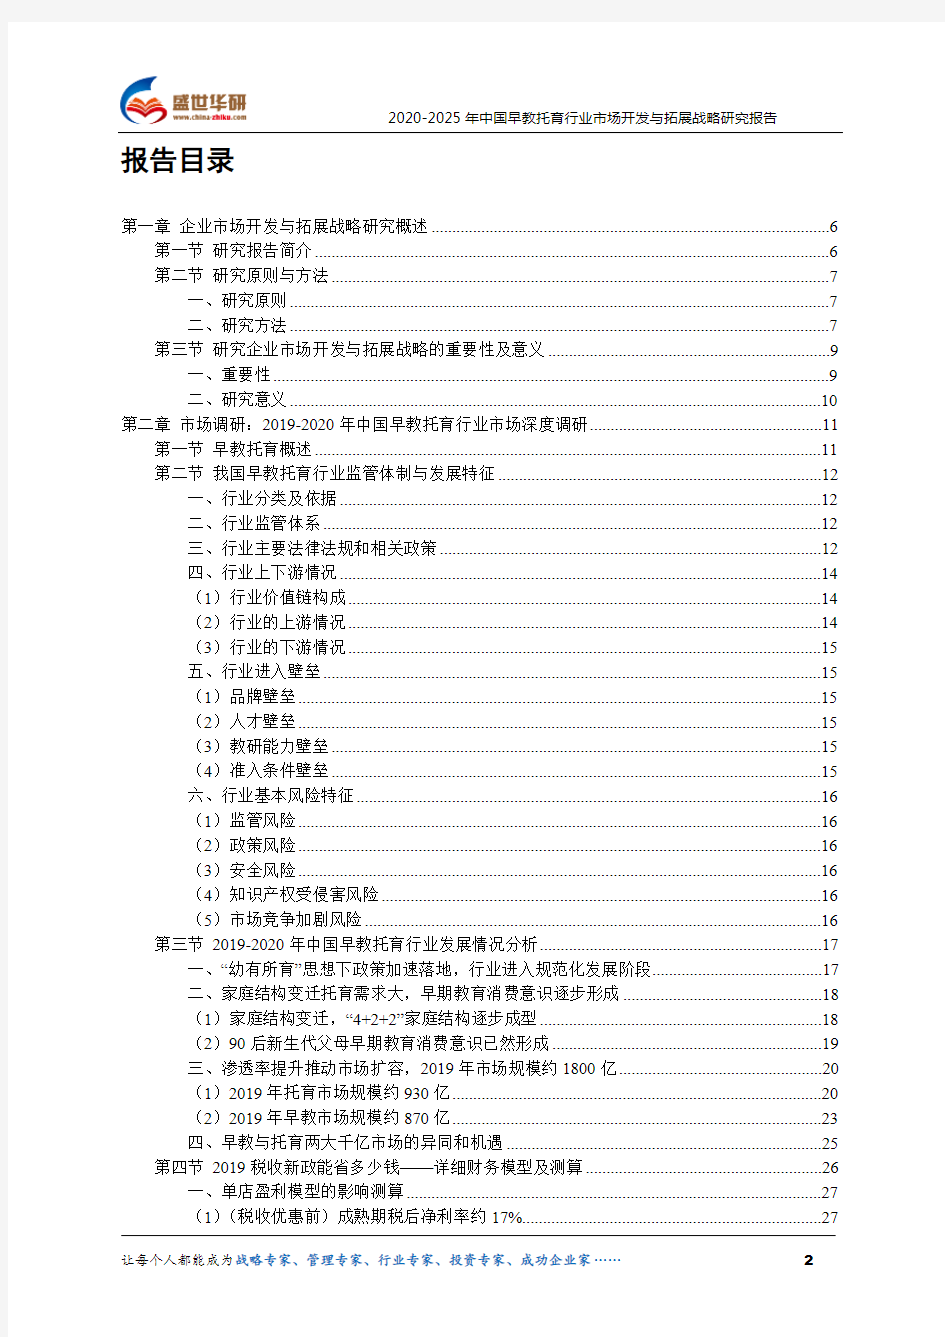 【完整版】2020-2025年中国早教托育行业市场开发与拓展战略研究报告